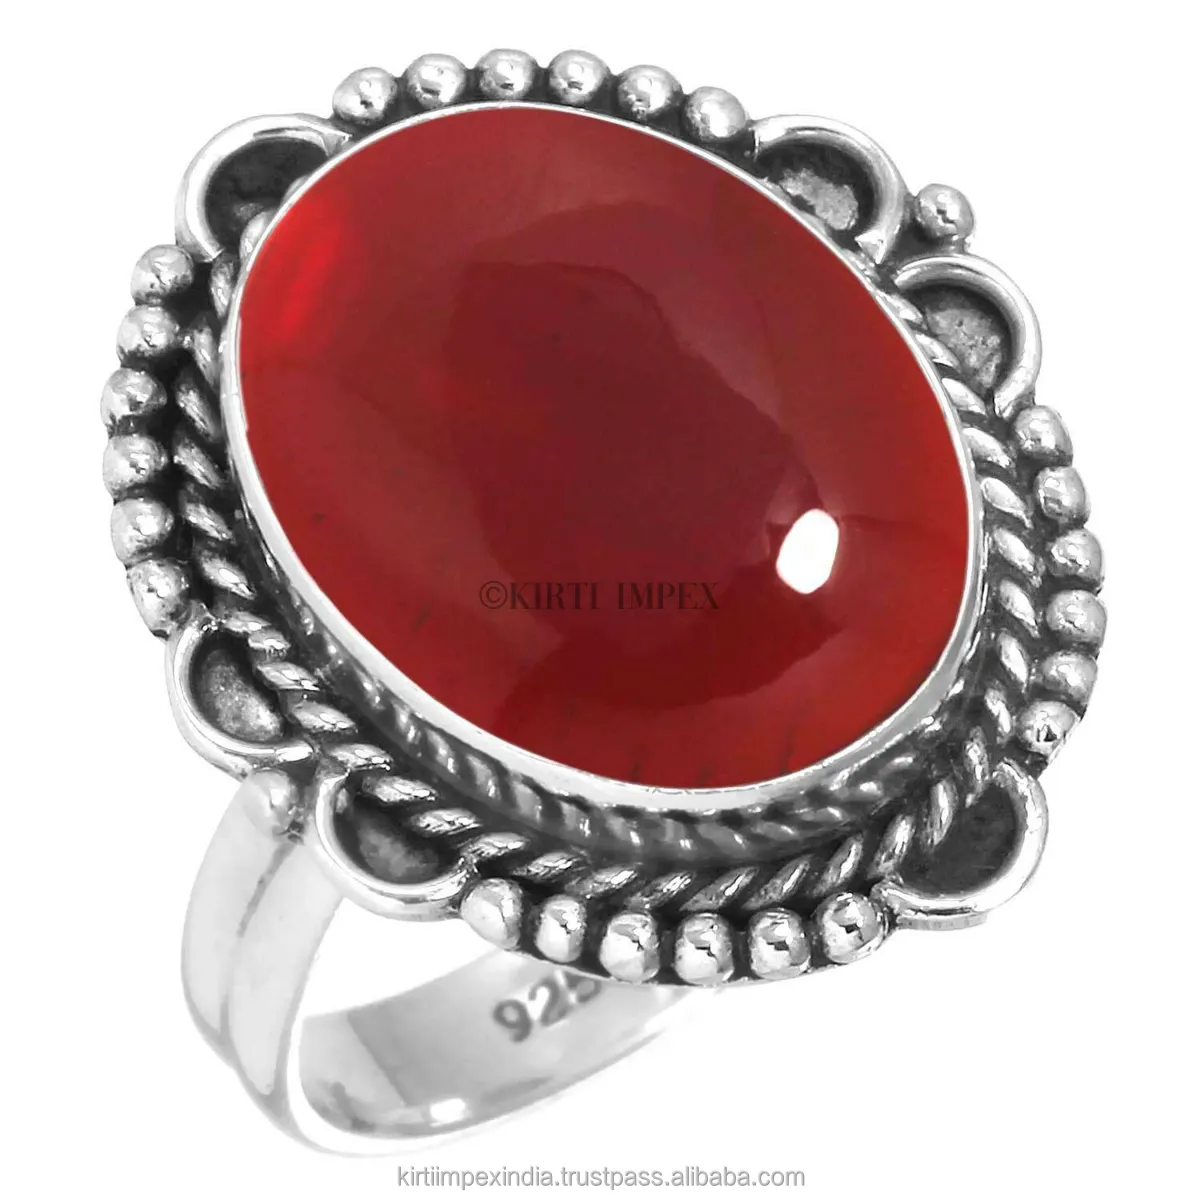 Leuke En Trending Exotische Ring Rode Onyx Unieke Ontwerpen Zilveren Overlay Boho Ringen Vintage Vrouwen Sieraden Voor Retailers